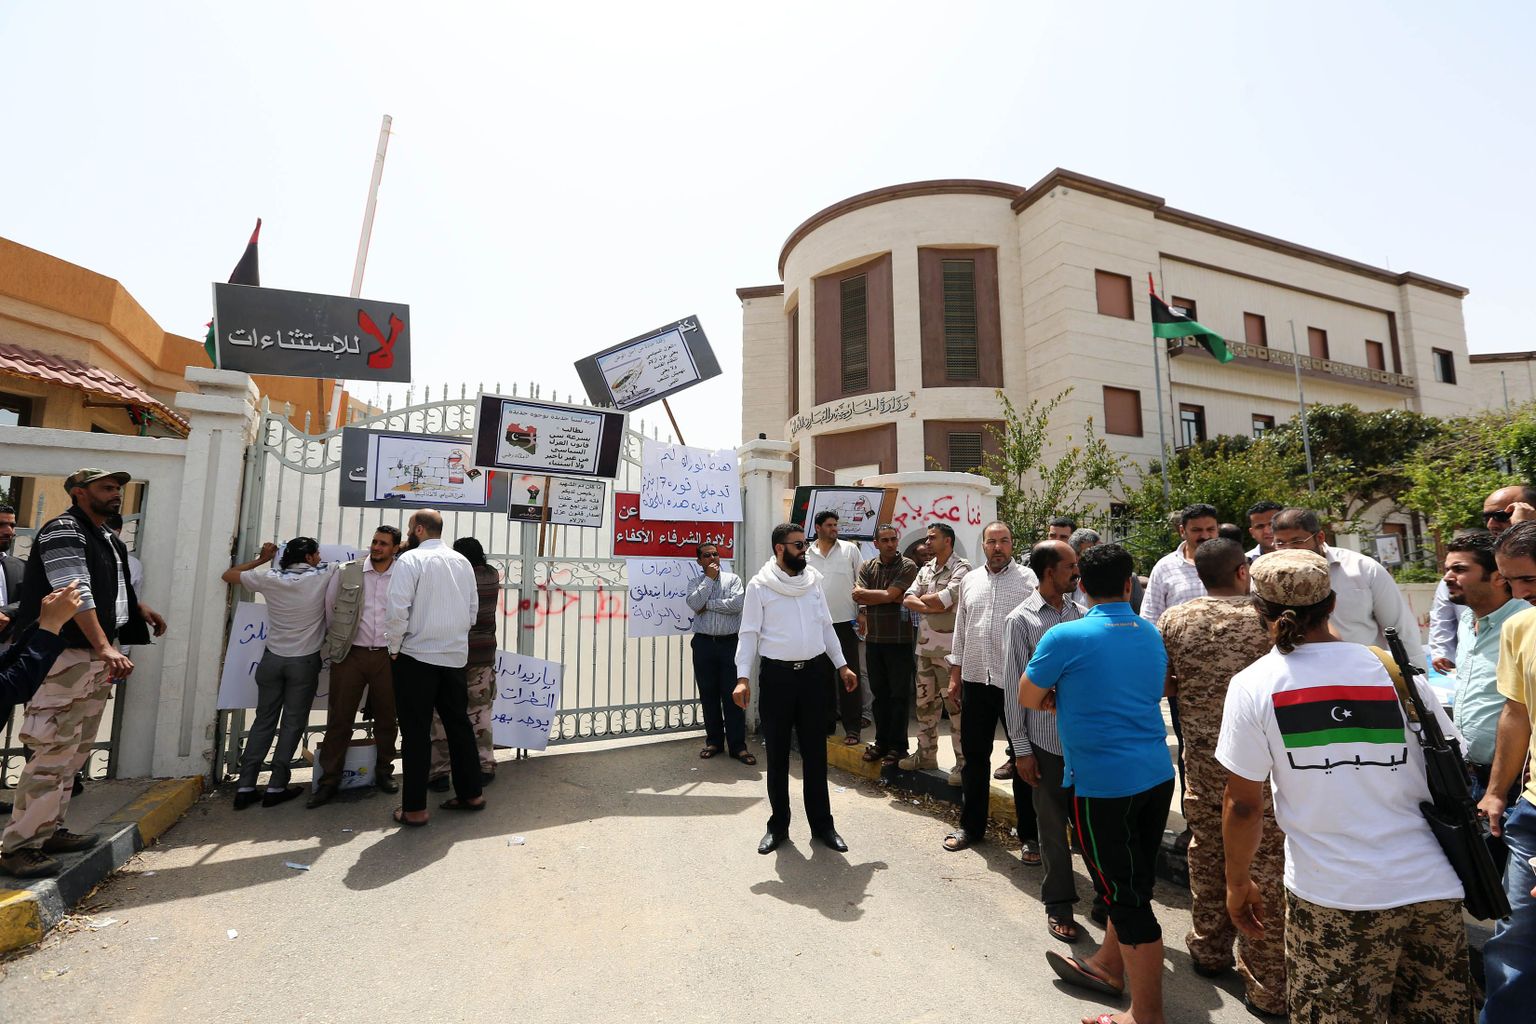 Relvastatud mehed on blokeerinud sissepääsu Liibüa välisministeeriumisse.